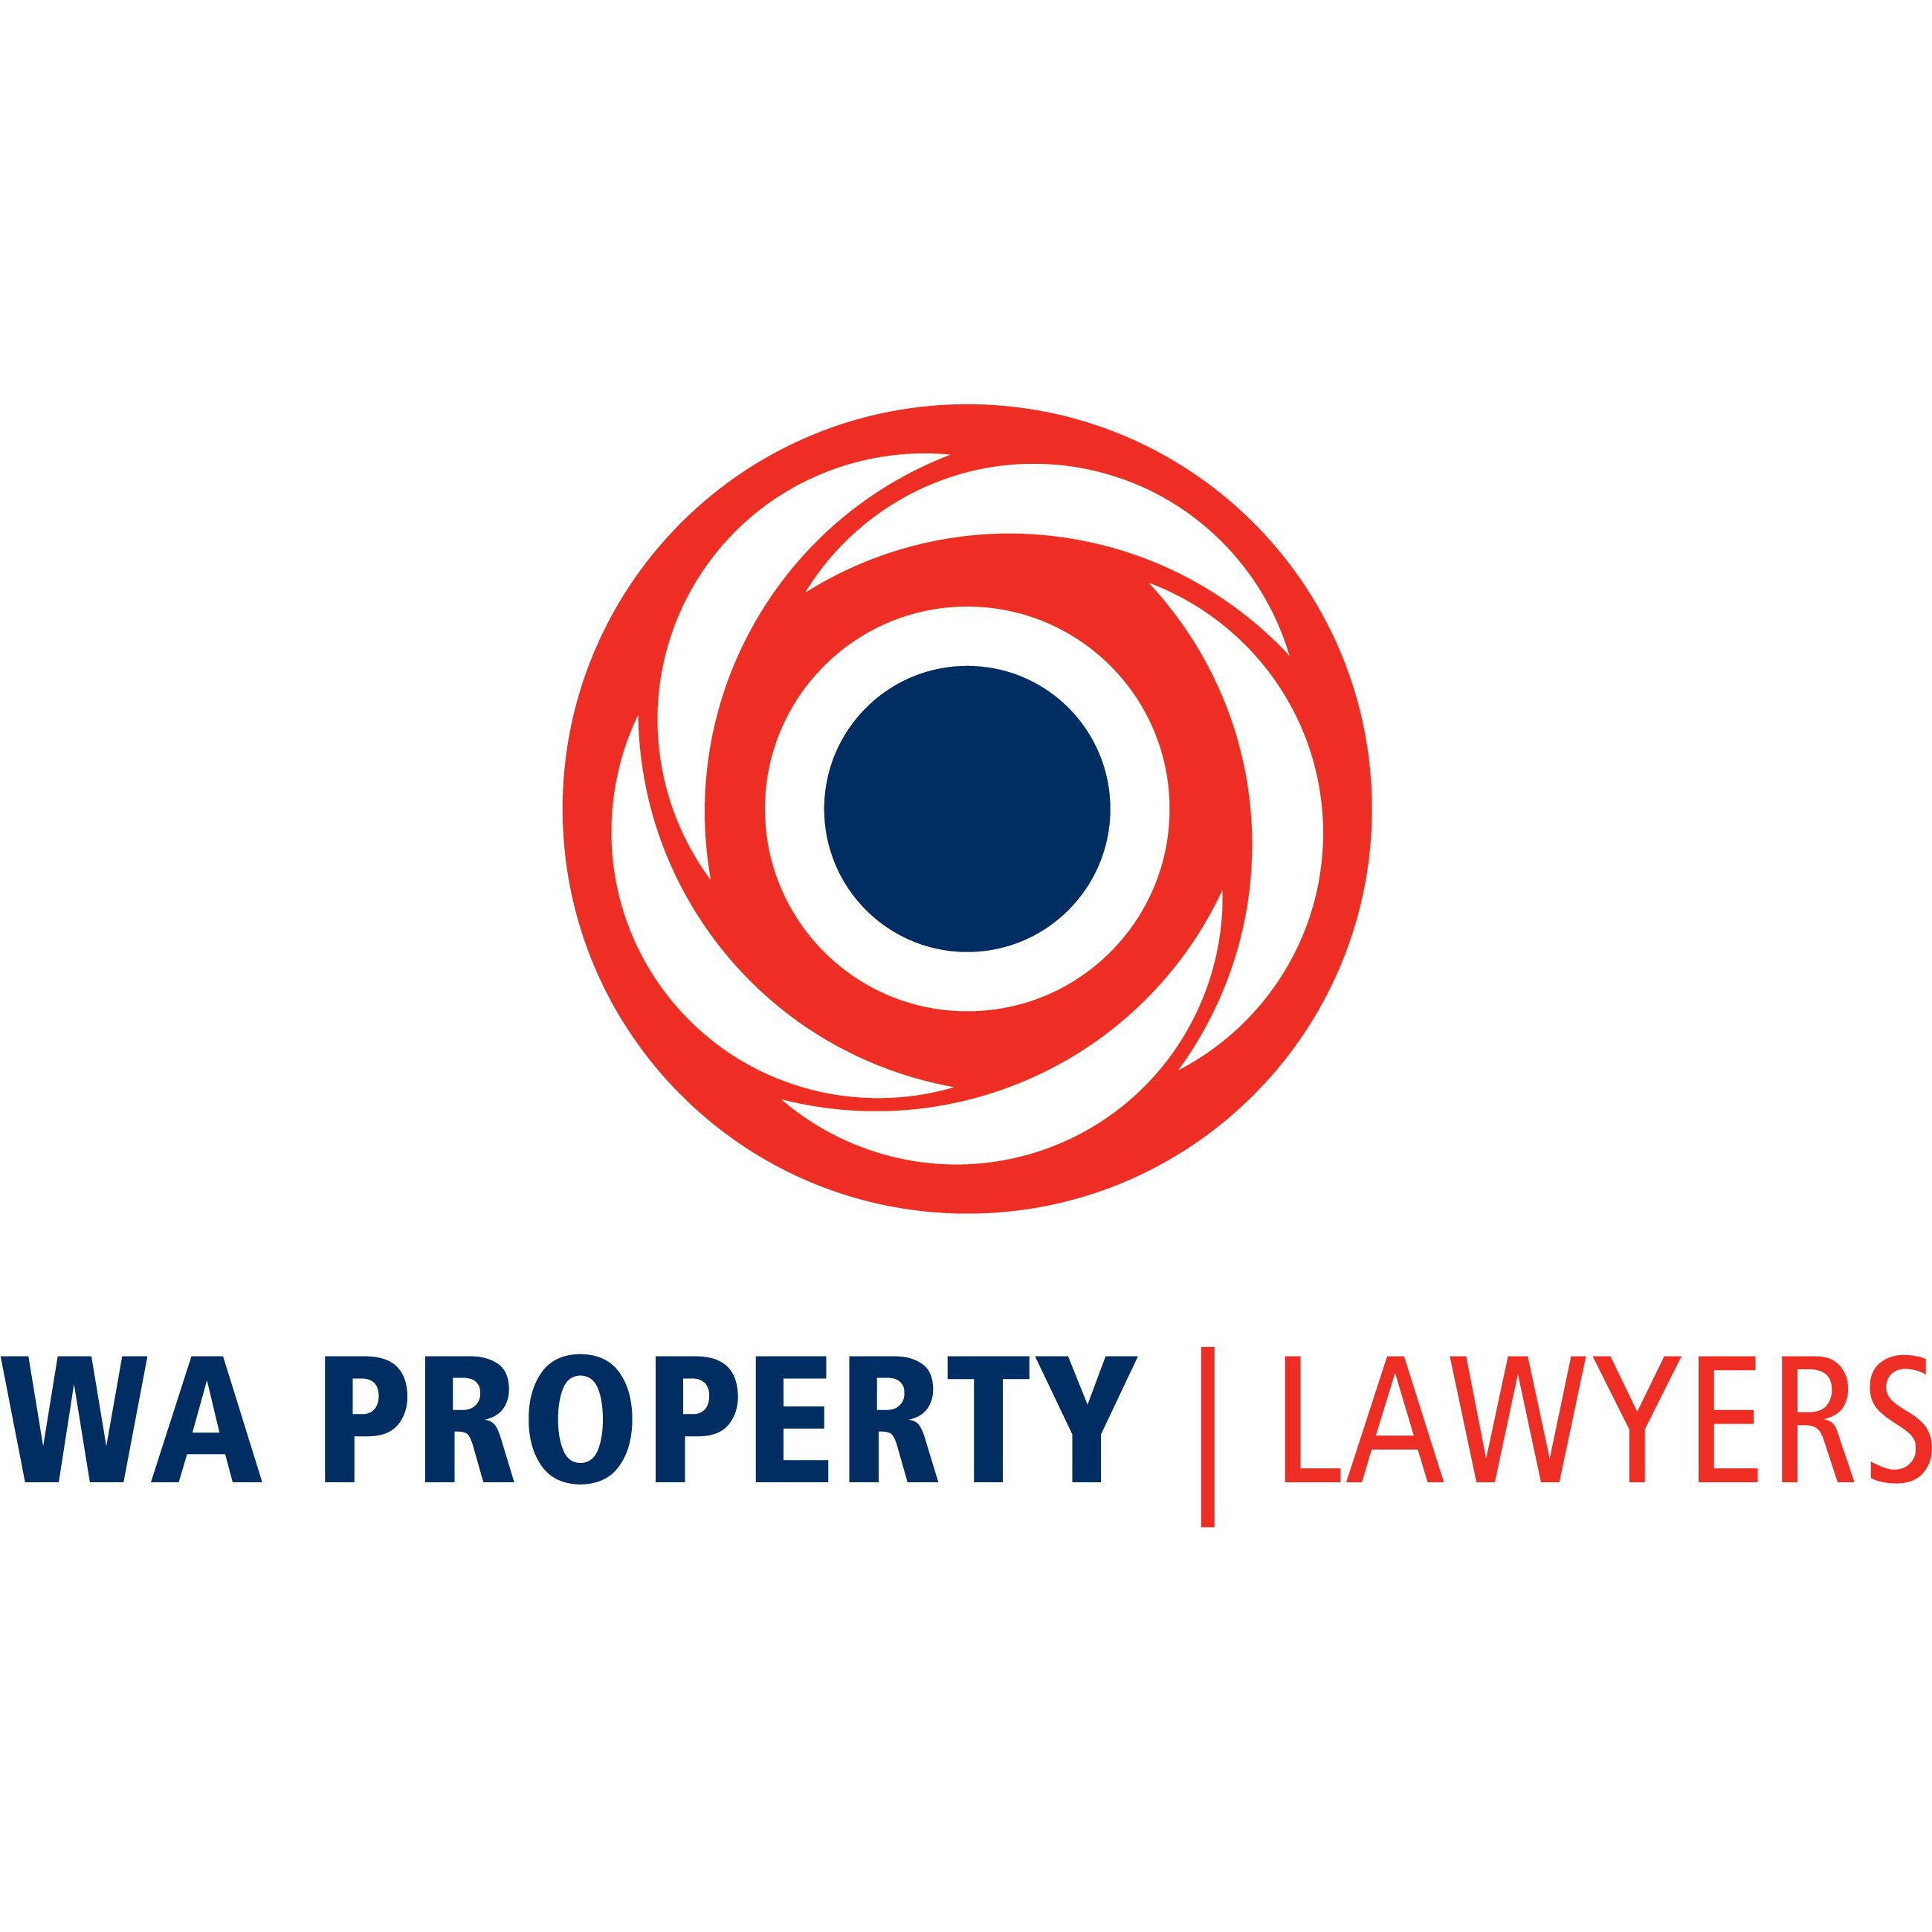 WA Property Lawyers - West Perth, WA 6005 - (08) 9380 3600 | ShowMeLocal.com